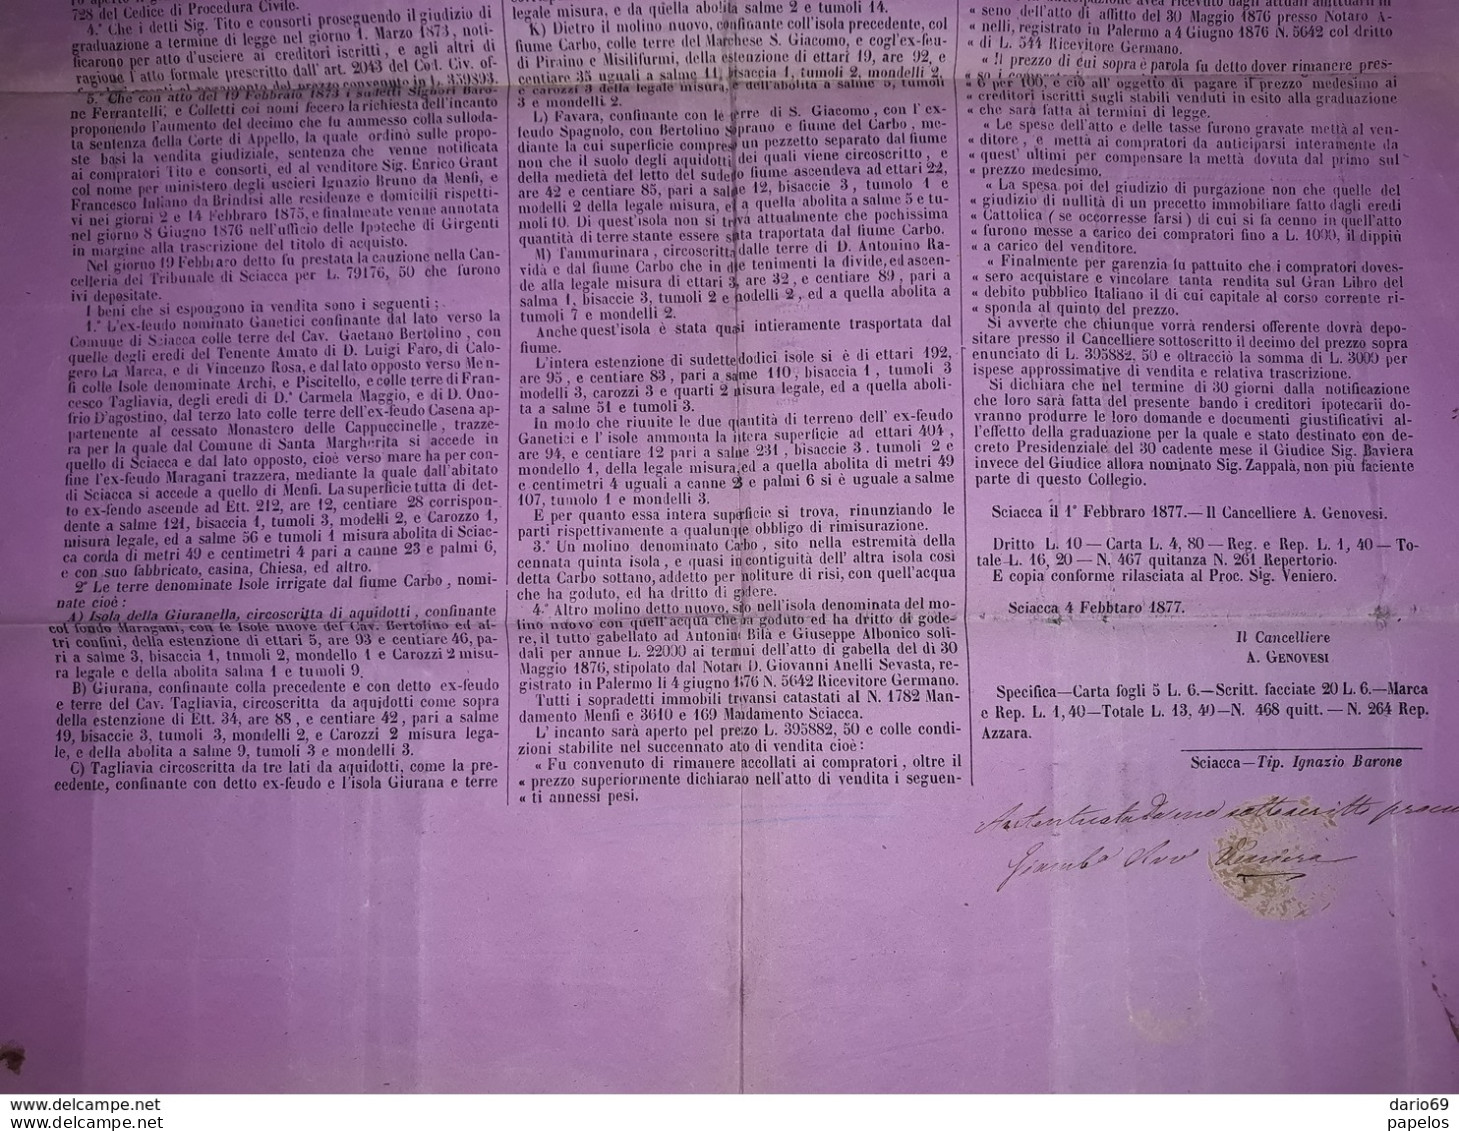 1877 MANIFESTO SCIACCA  AGRIGENTO  BANDO PER VENDITA GIUDIZIARIA  CON MARCHE DA BOLLO - Historical Documents